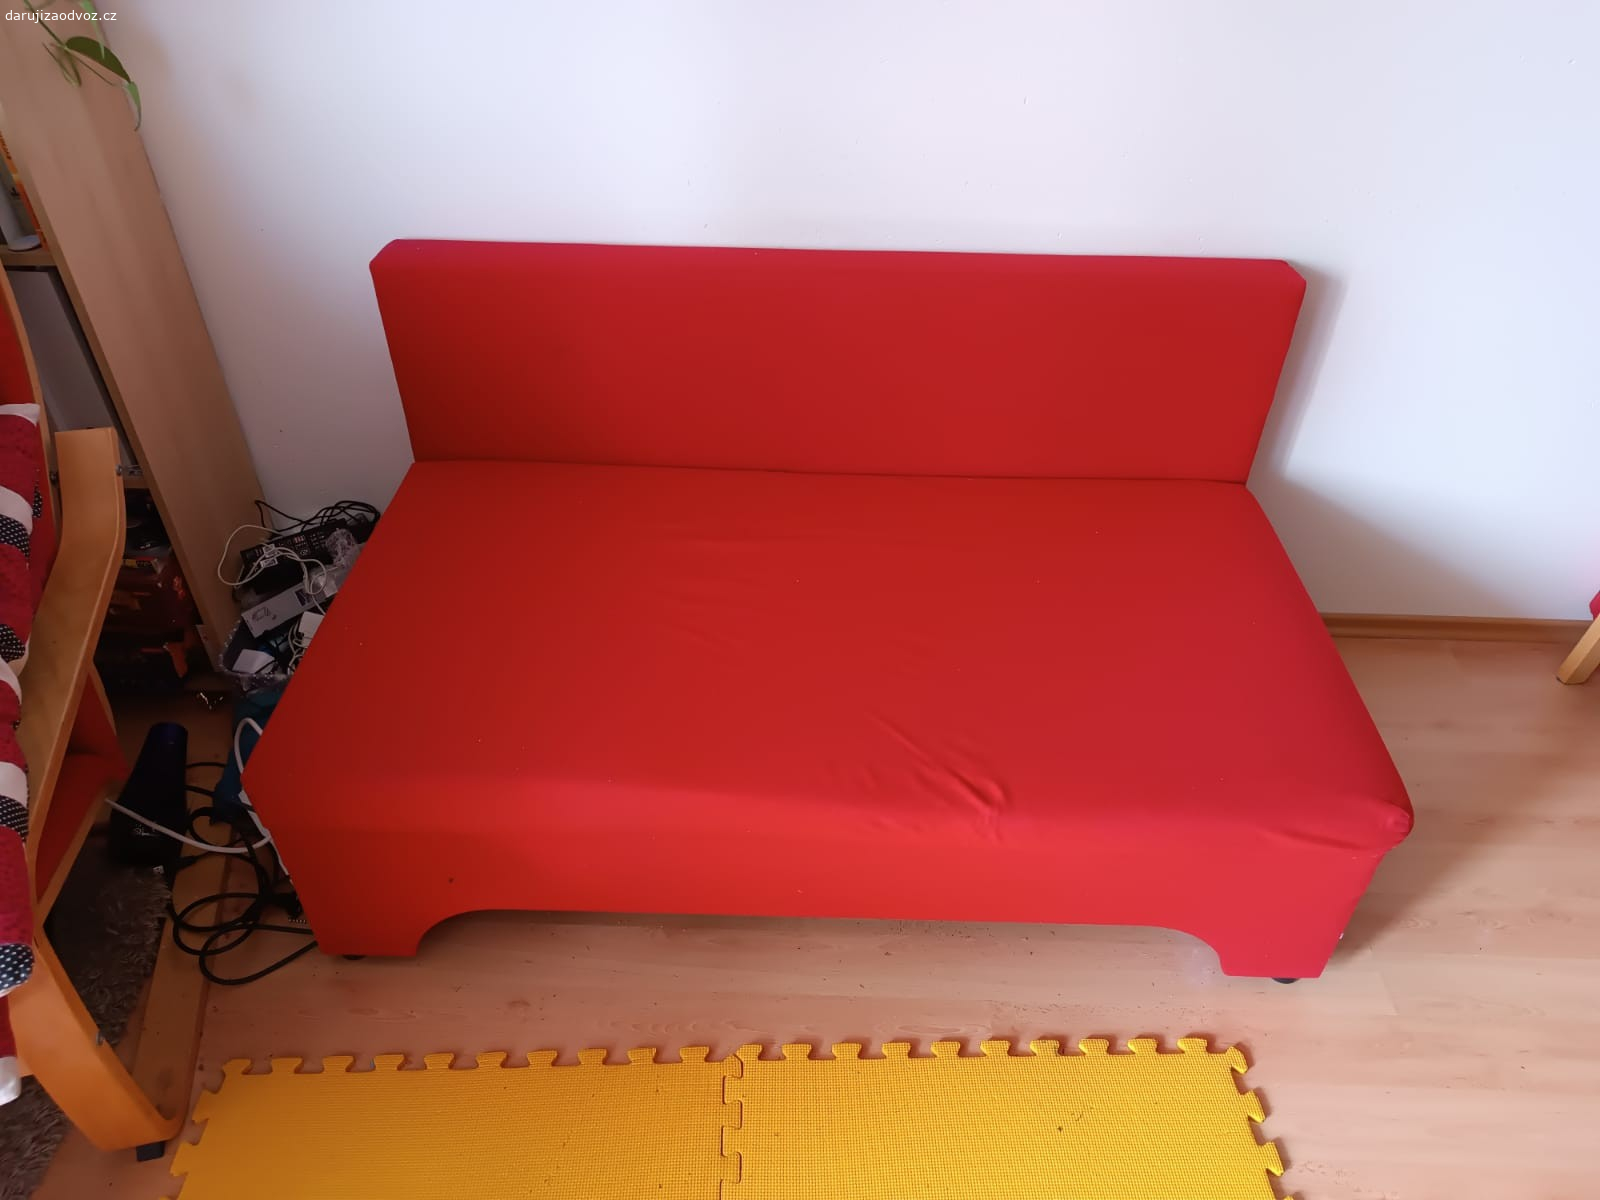 červený gauč. Darujeme červený gauč dle fotky. Nutné k němu použít polštáře pro opření.